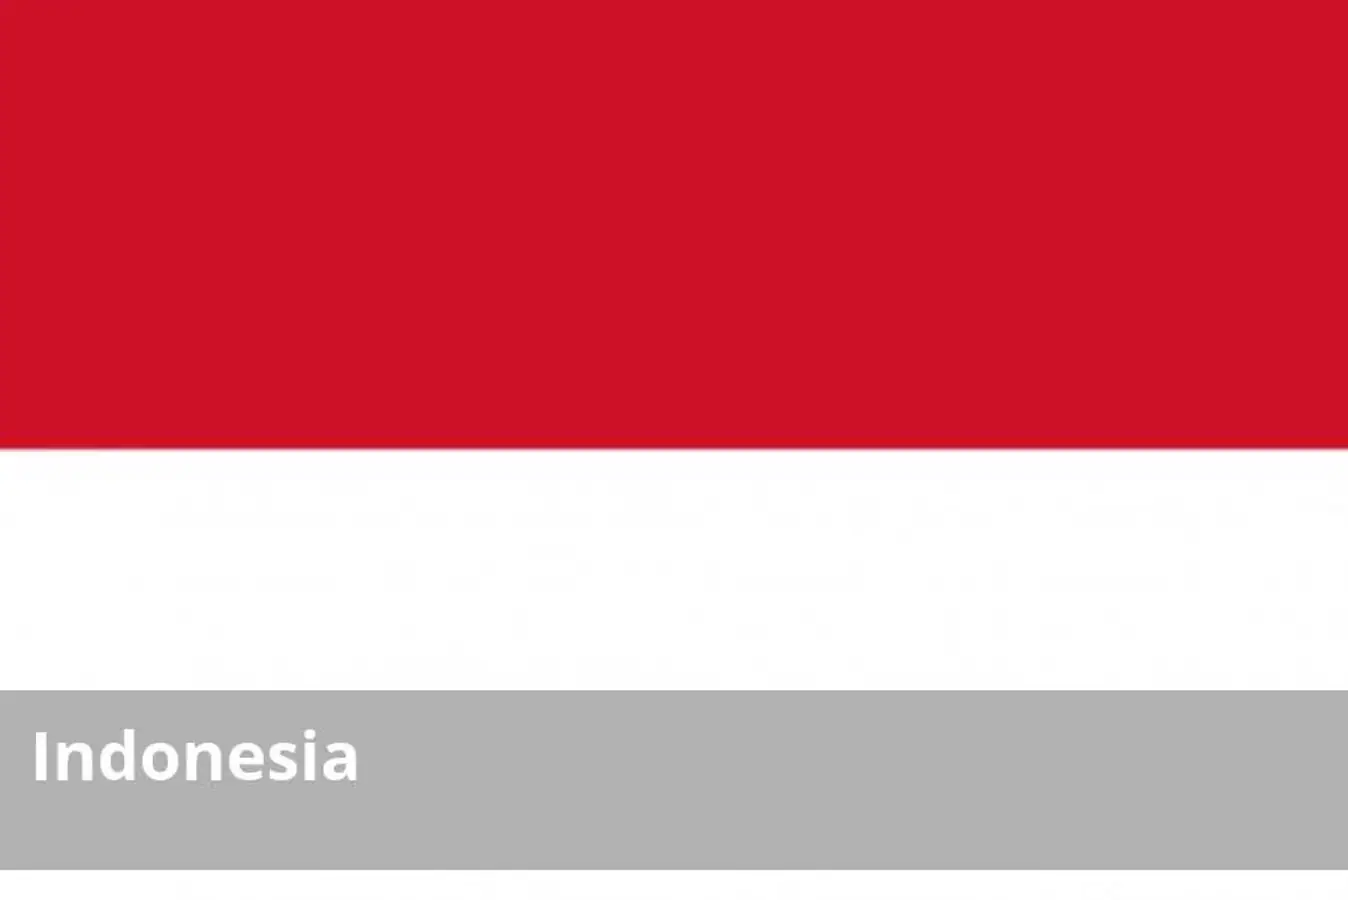 El volcán Agung en la isla de Bali se encuentra en erupción desde el pasado mes de noviembre. Desde entonces, el nivel de alerta no ha bajado de 3 (siendo el nivel 4 el máximo) y se ha establecido una zona de seguridad (actualmente de 4 kilómetros alrededor del volcán) a la que está prohibido el acceso. Del mismo modo, continúa siendo elevado el riesgo de amenaza terrorista en Indonesia, ligada o no al Estado Islámico.